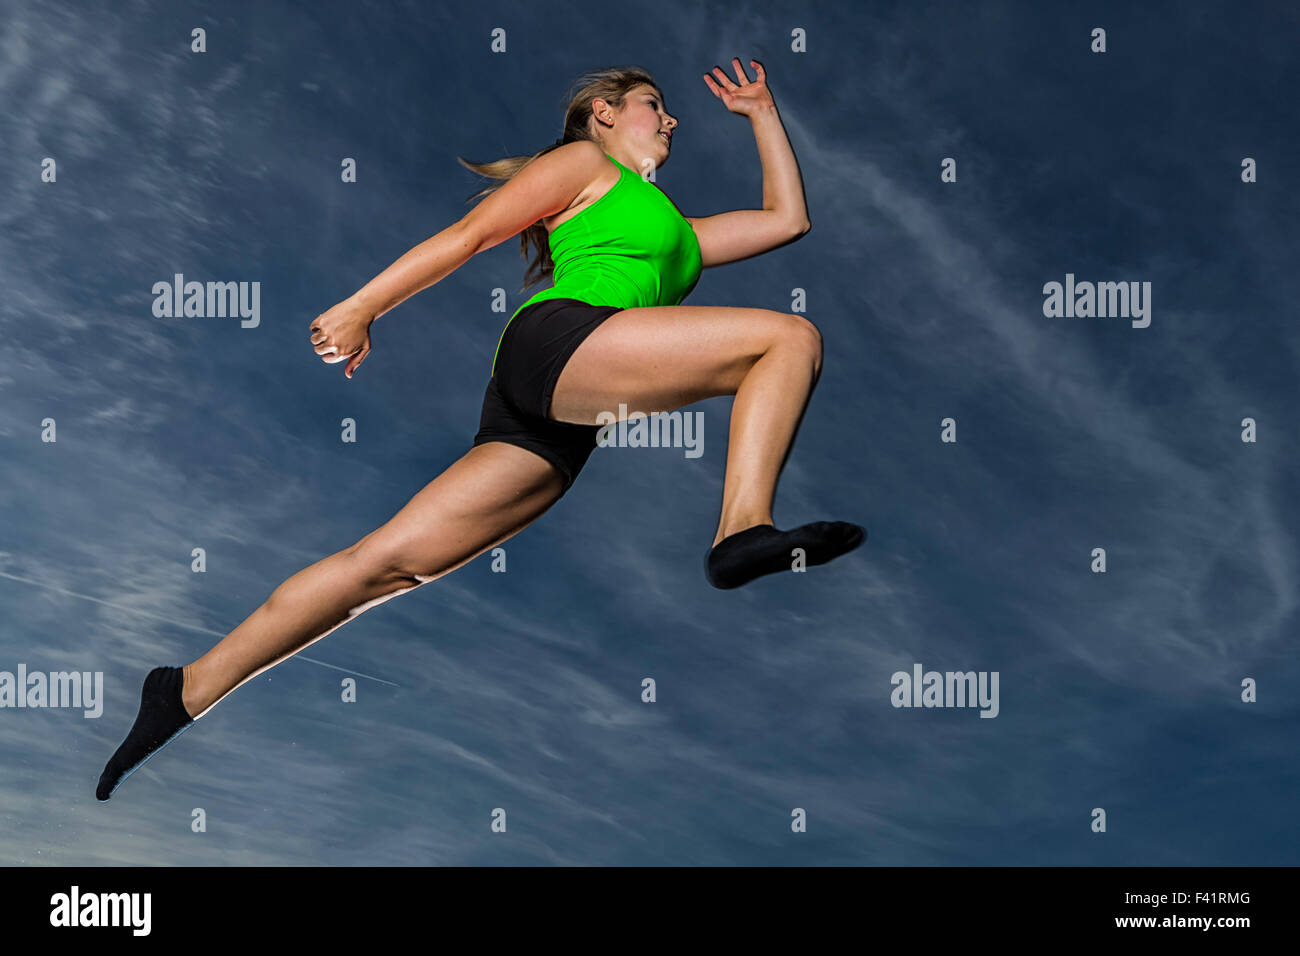 Mujer joven, de 18 años, saltando, contra el cielo nocturno Foto de stock